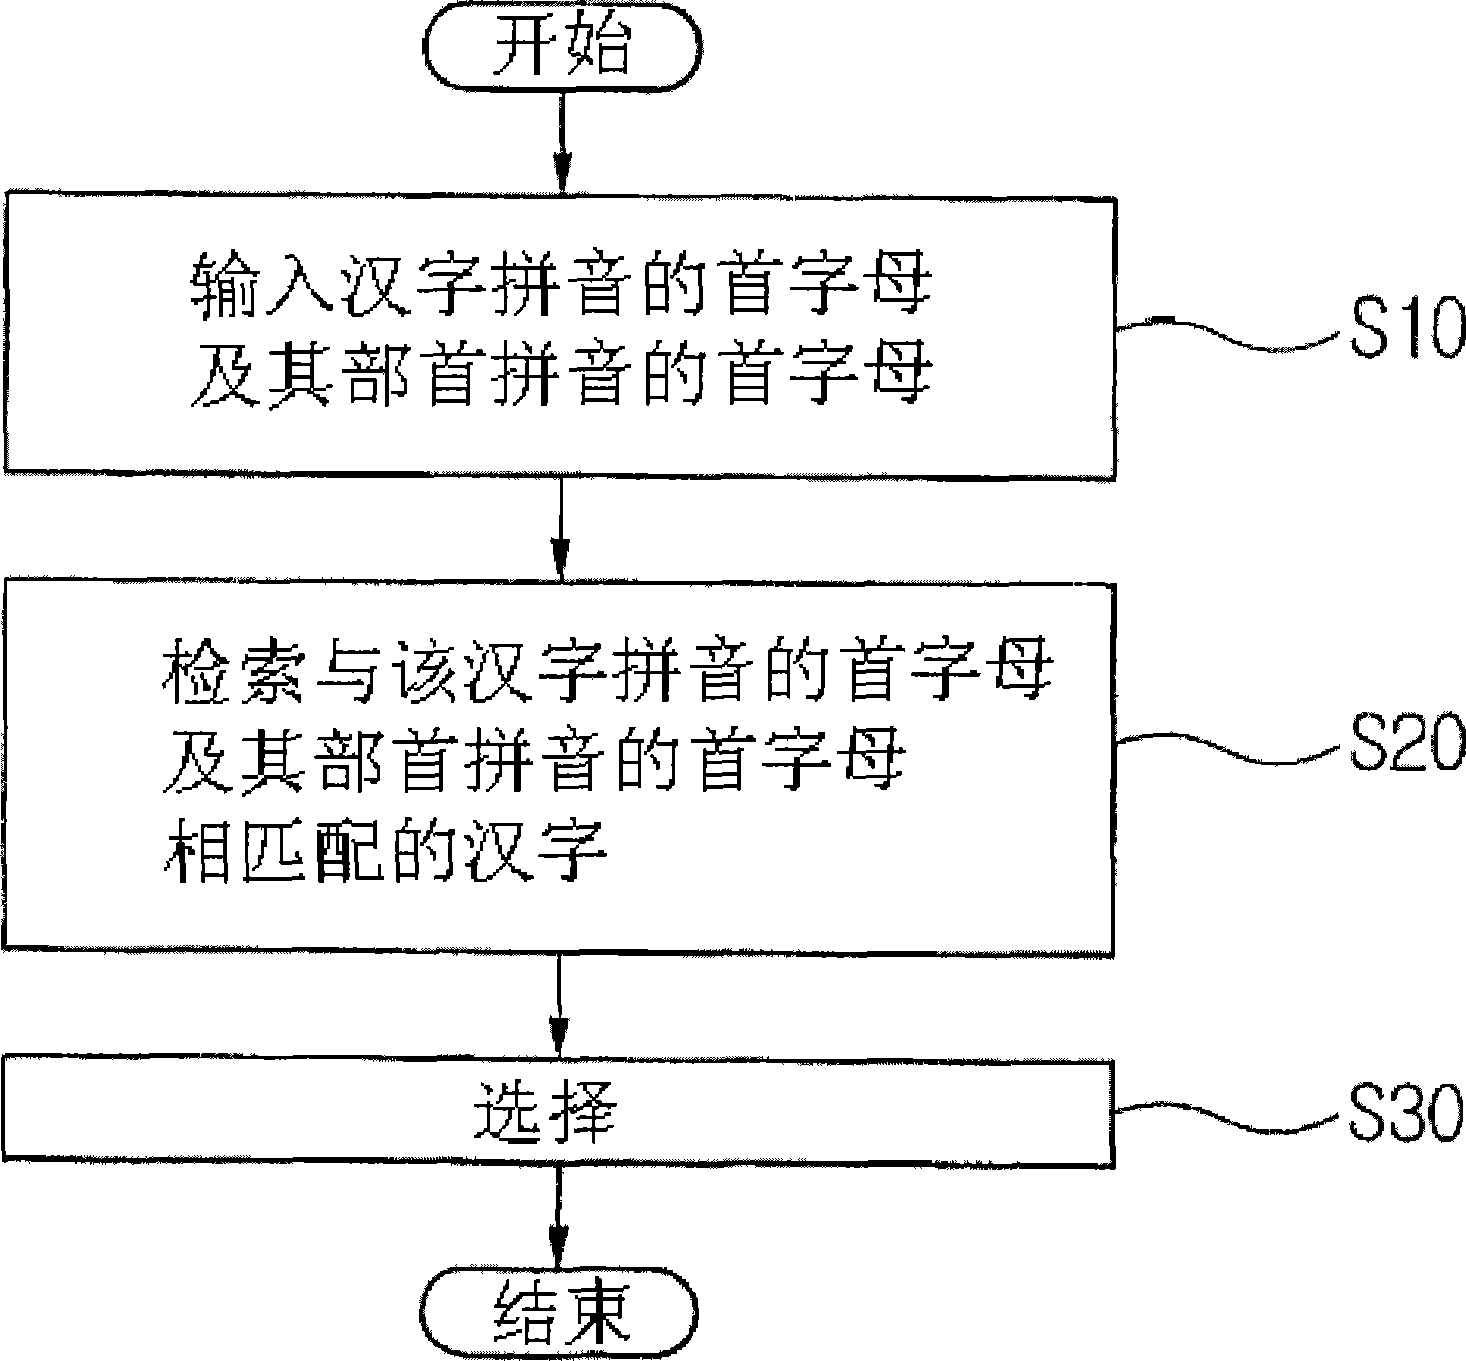 Method of inputting Chinese language using mobile terminal